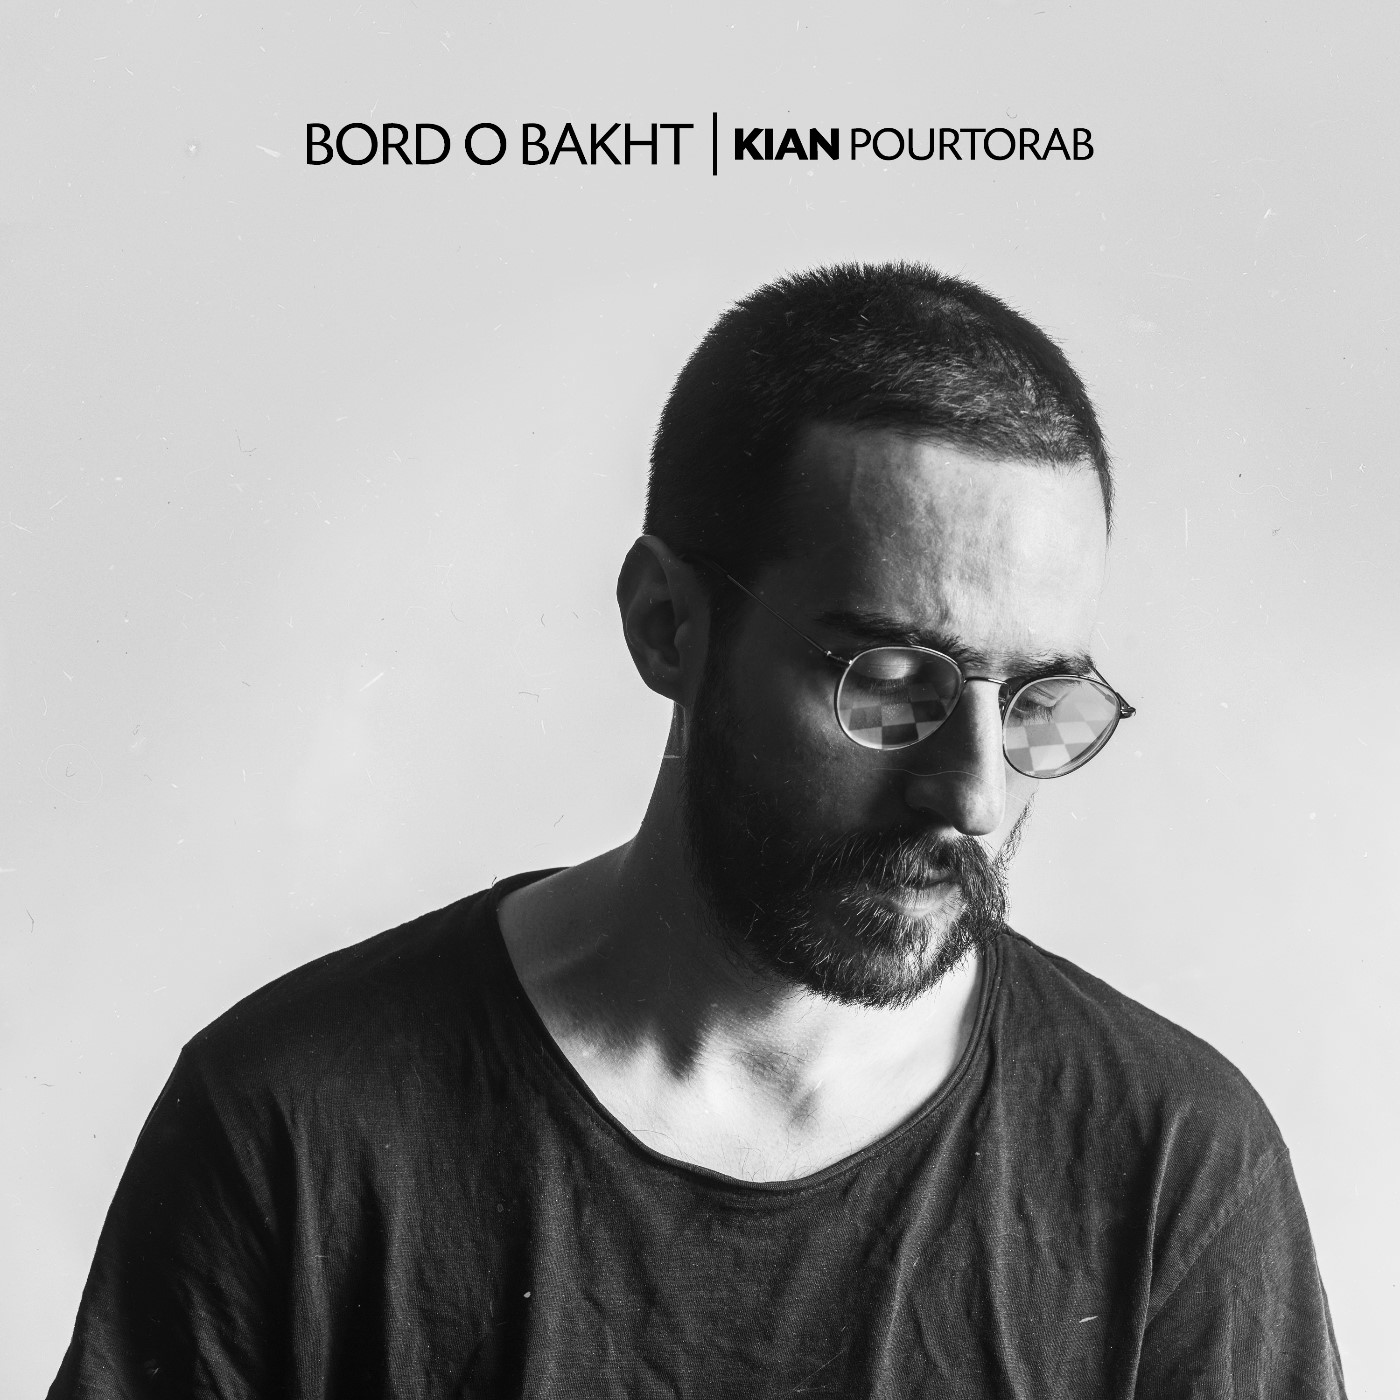  دانلود آهنگ جدید کیان پورتراب - برد و باخت | Download New Music By Kian Pourtorab - Bord o Bakht